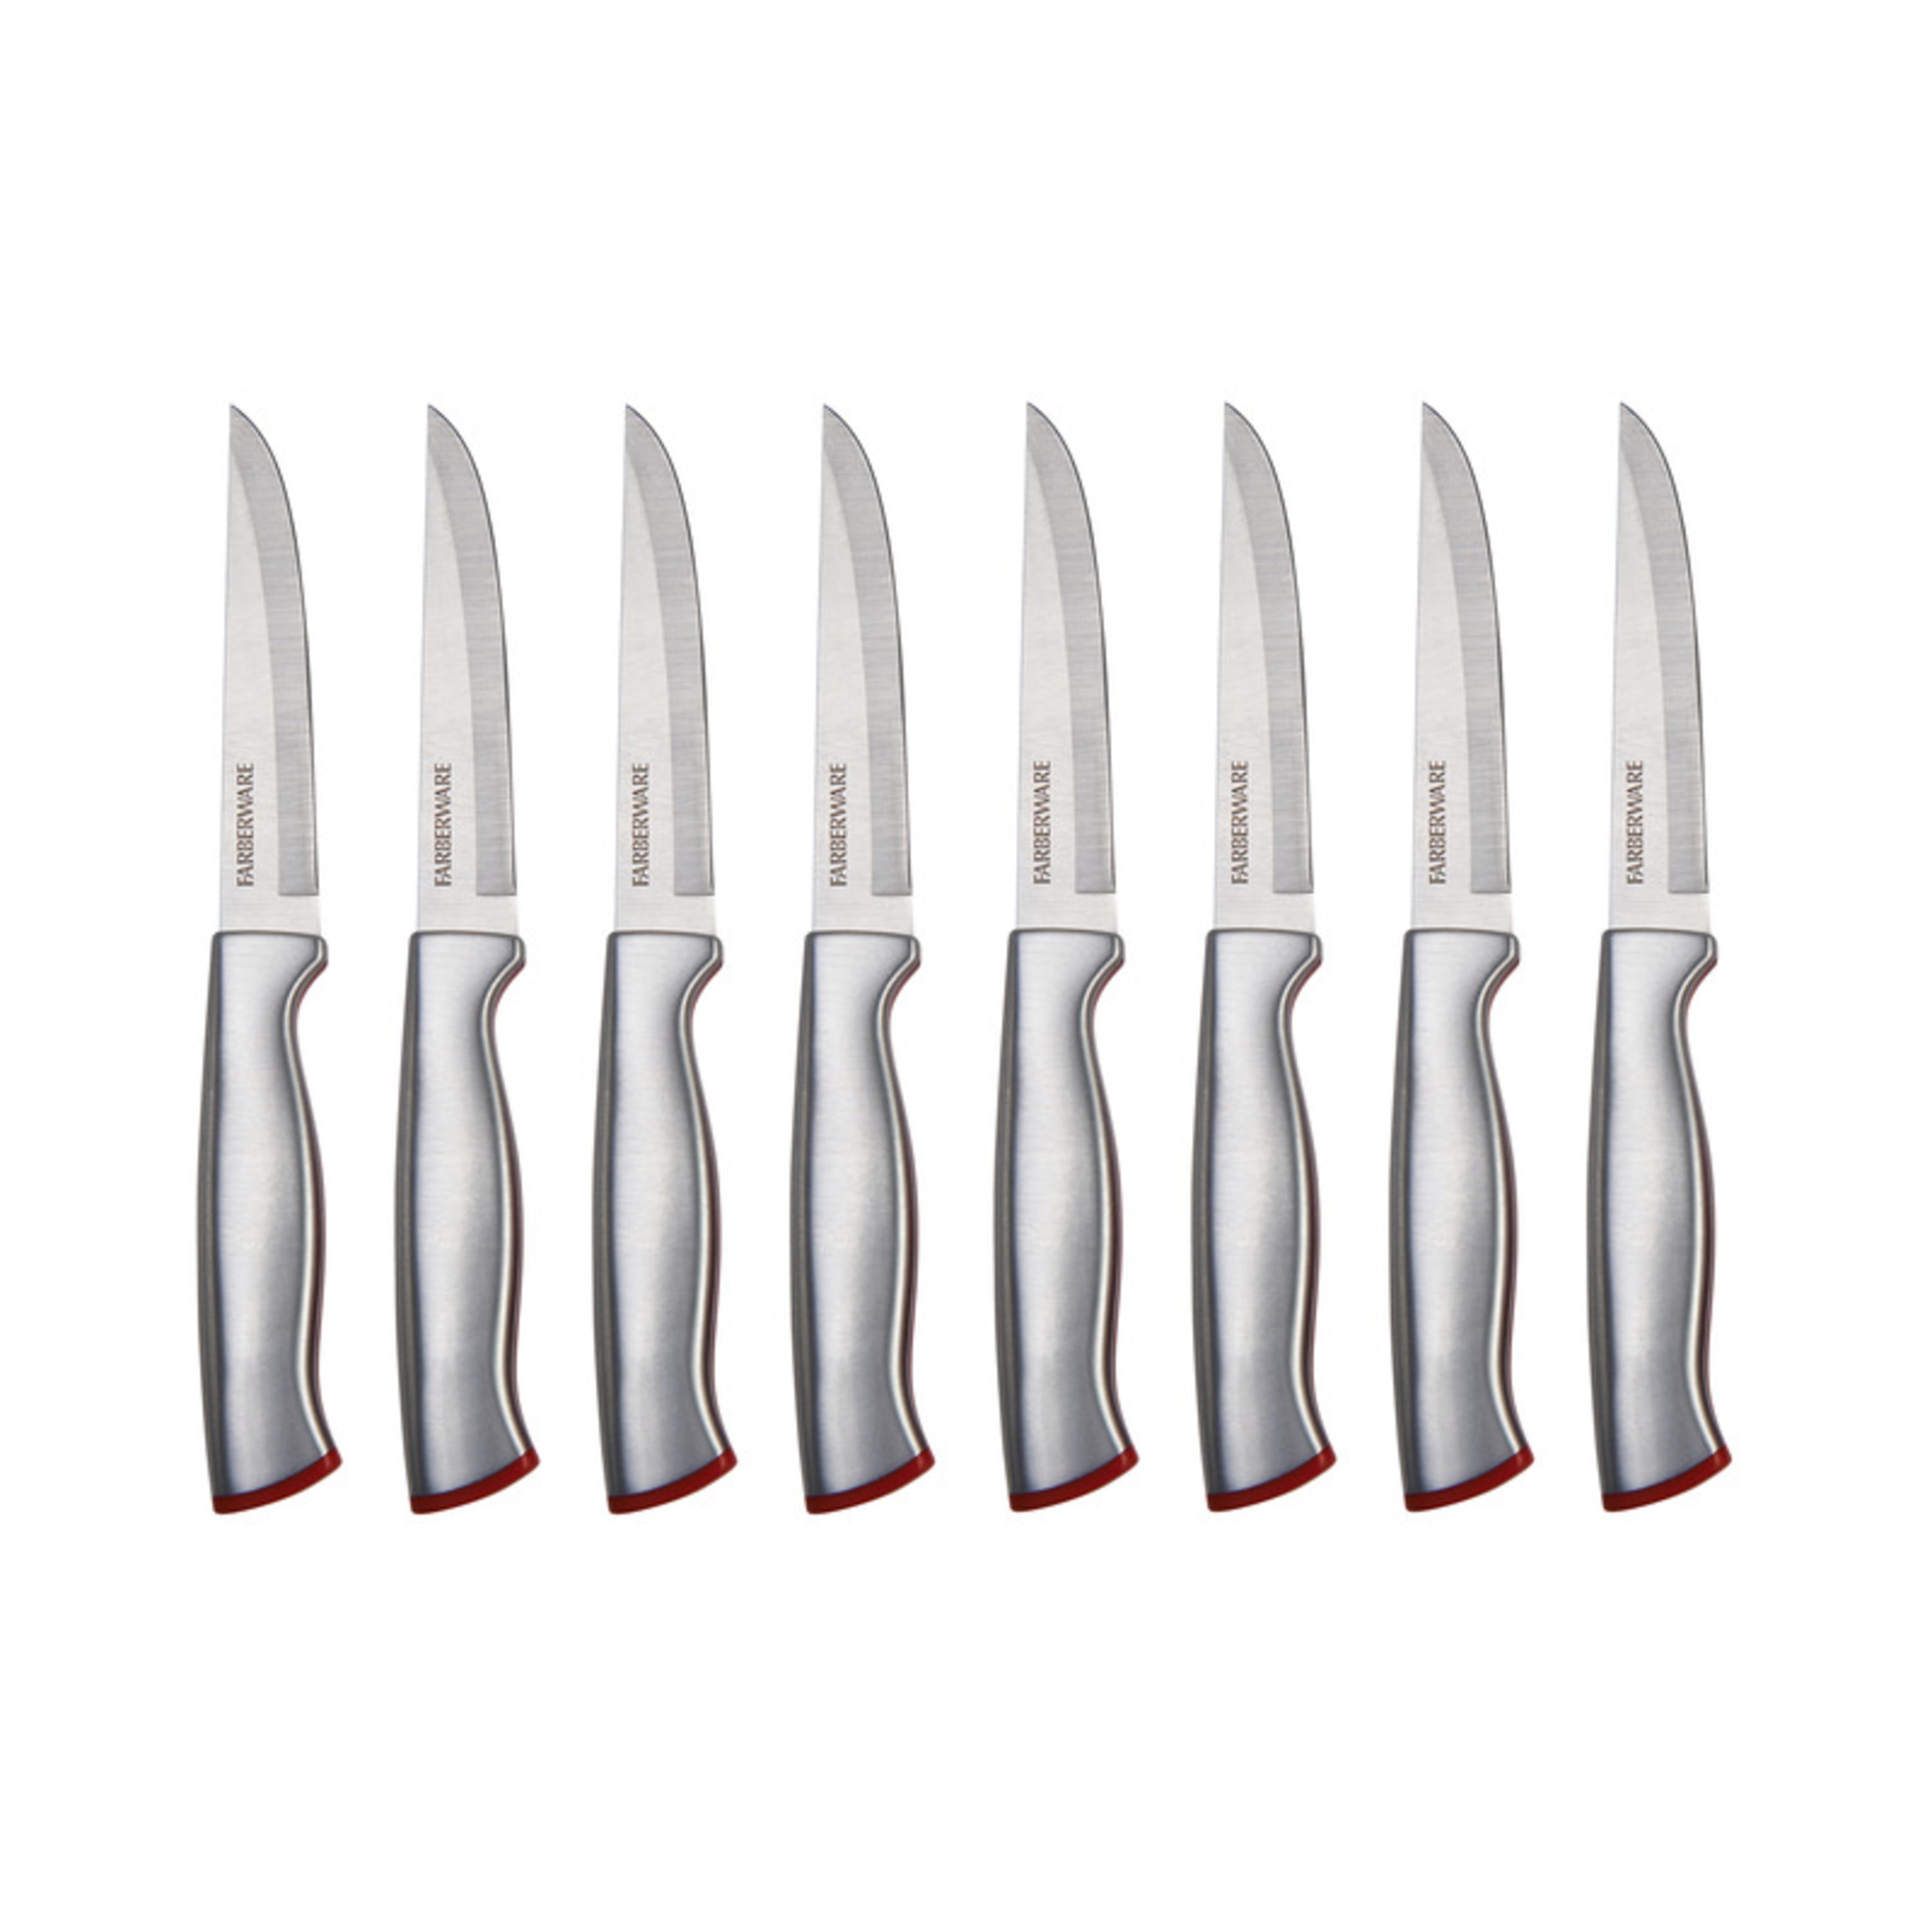 Farberware Edgekeeper Delrin Cutlery Set, 15-Piece, Red